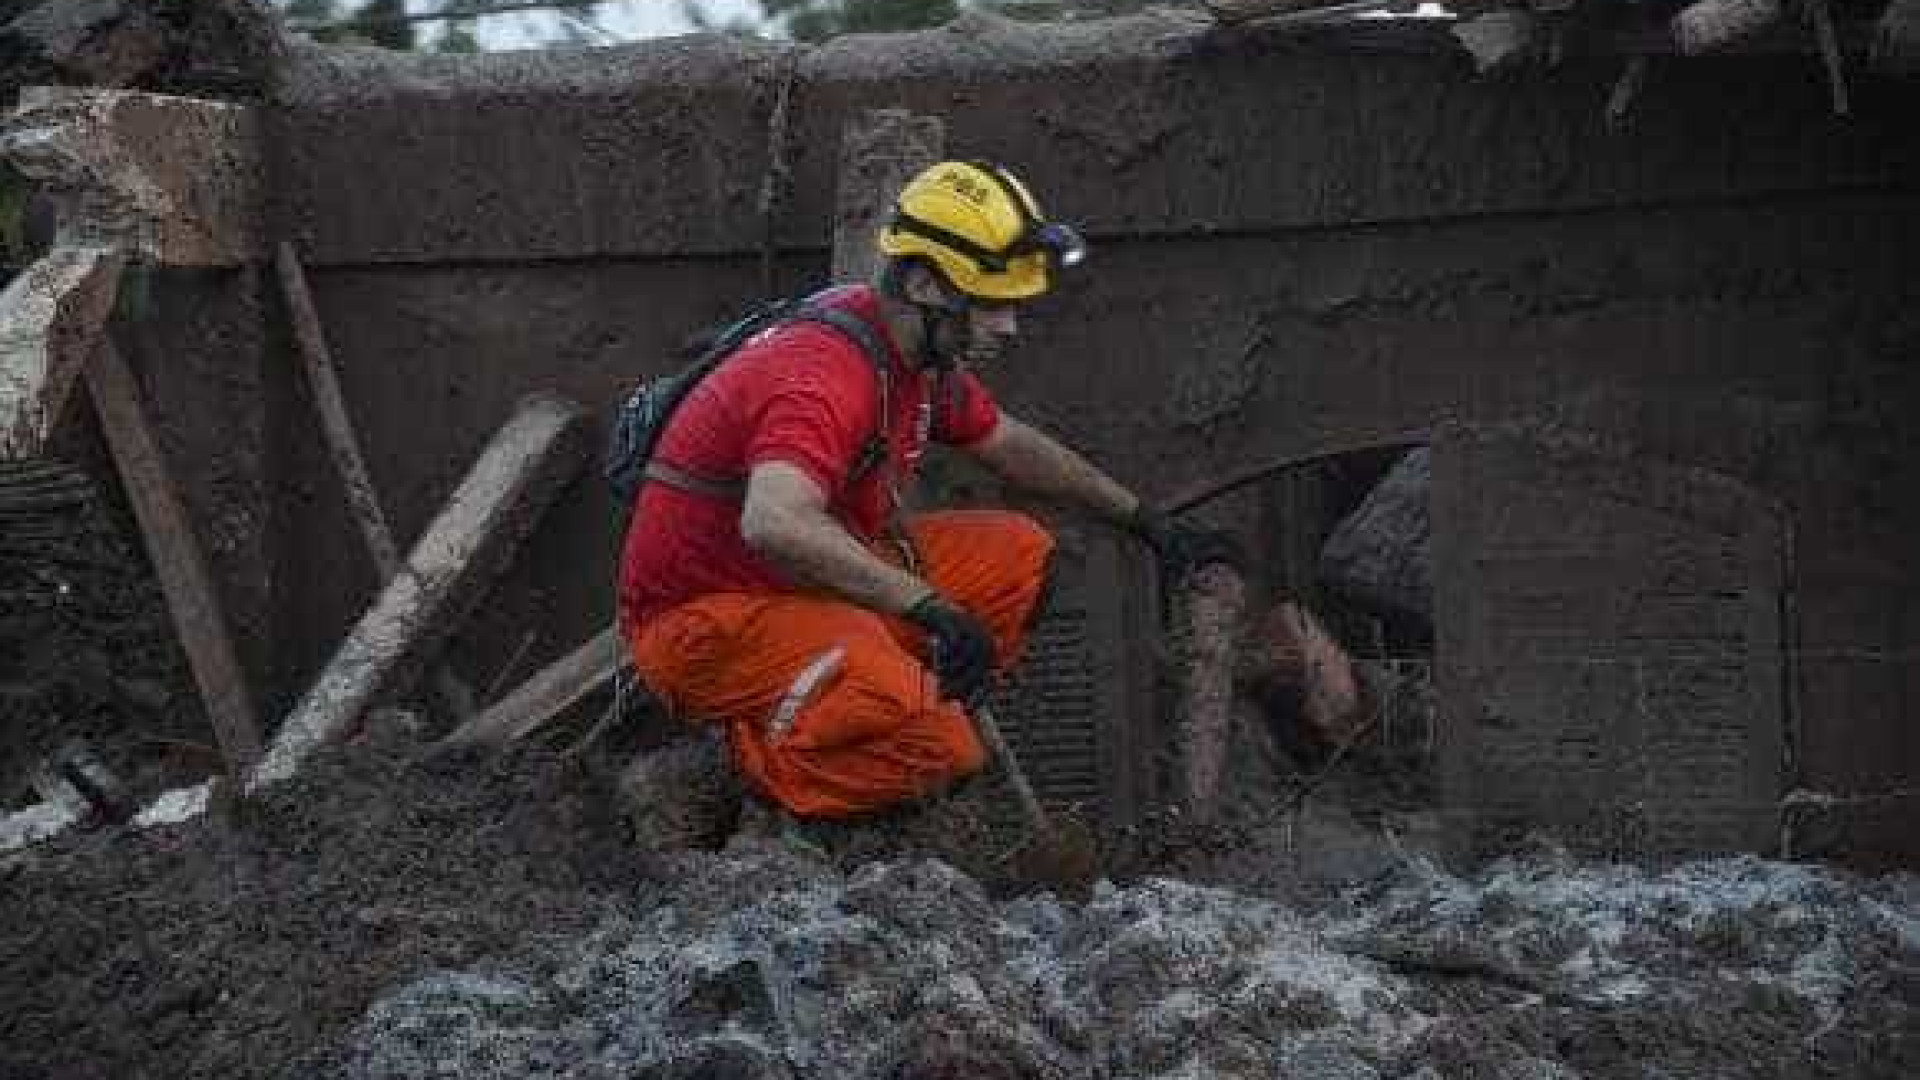 Cães farejadores ajudam no
trabalho de resgate em Mariana